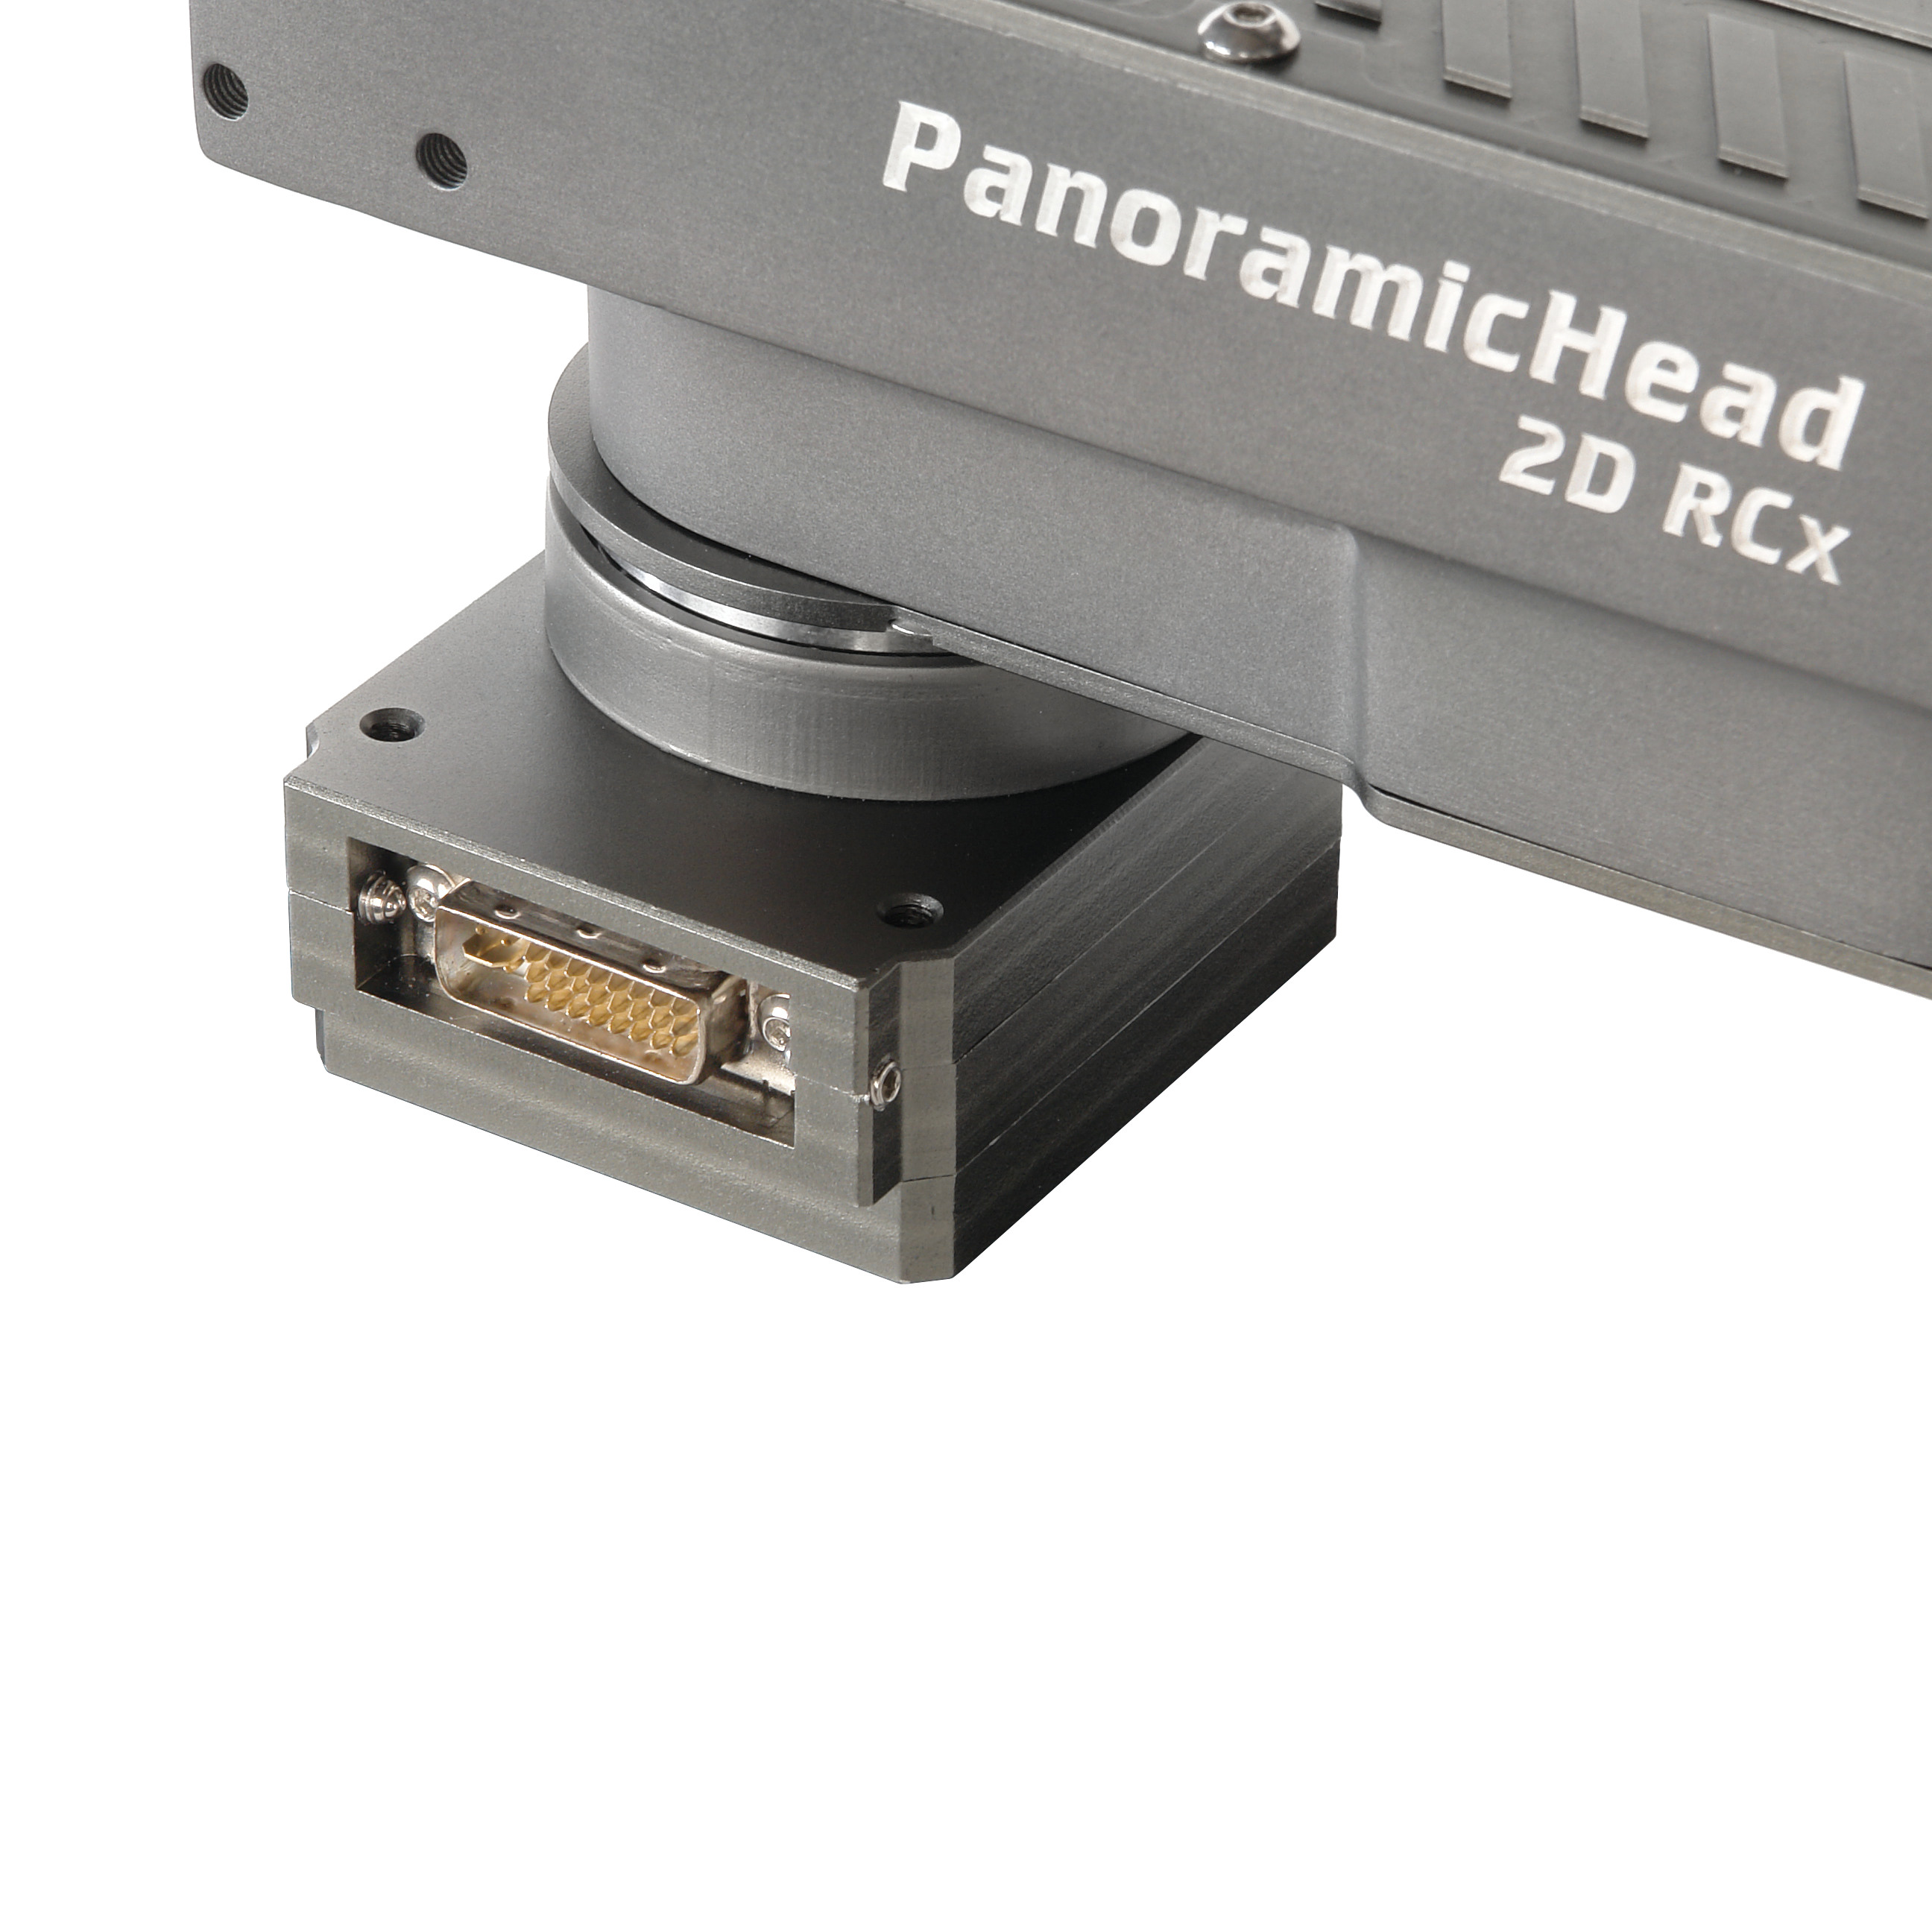    GreenBean PanoramicHead 2D RCx   Ultra-mart